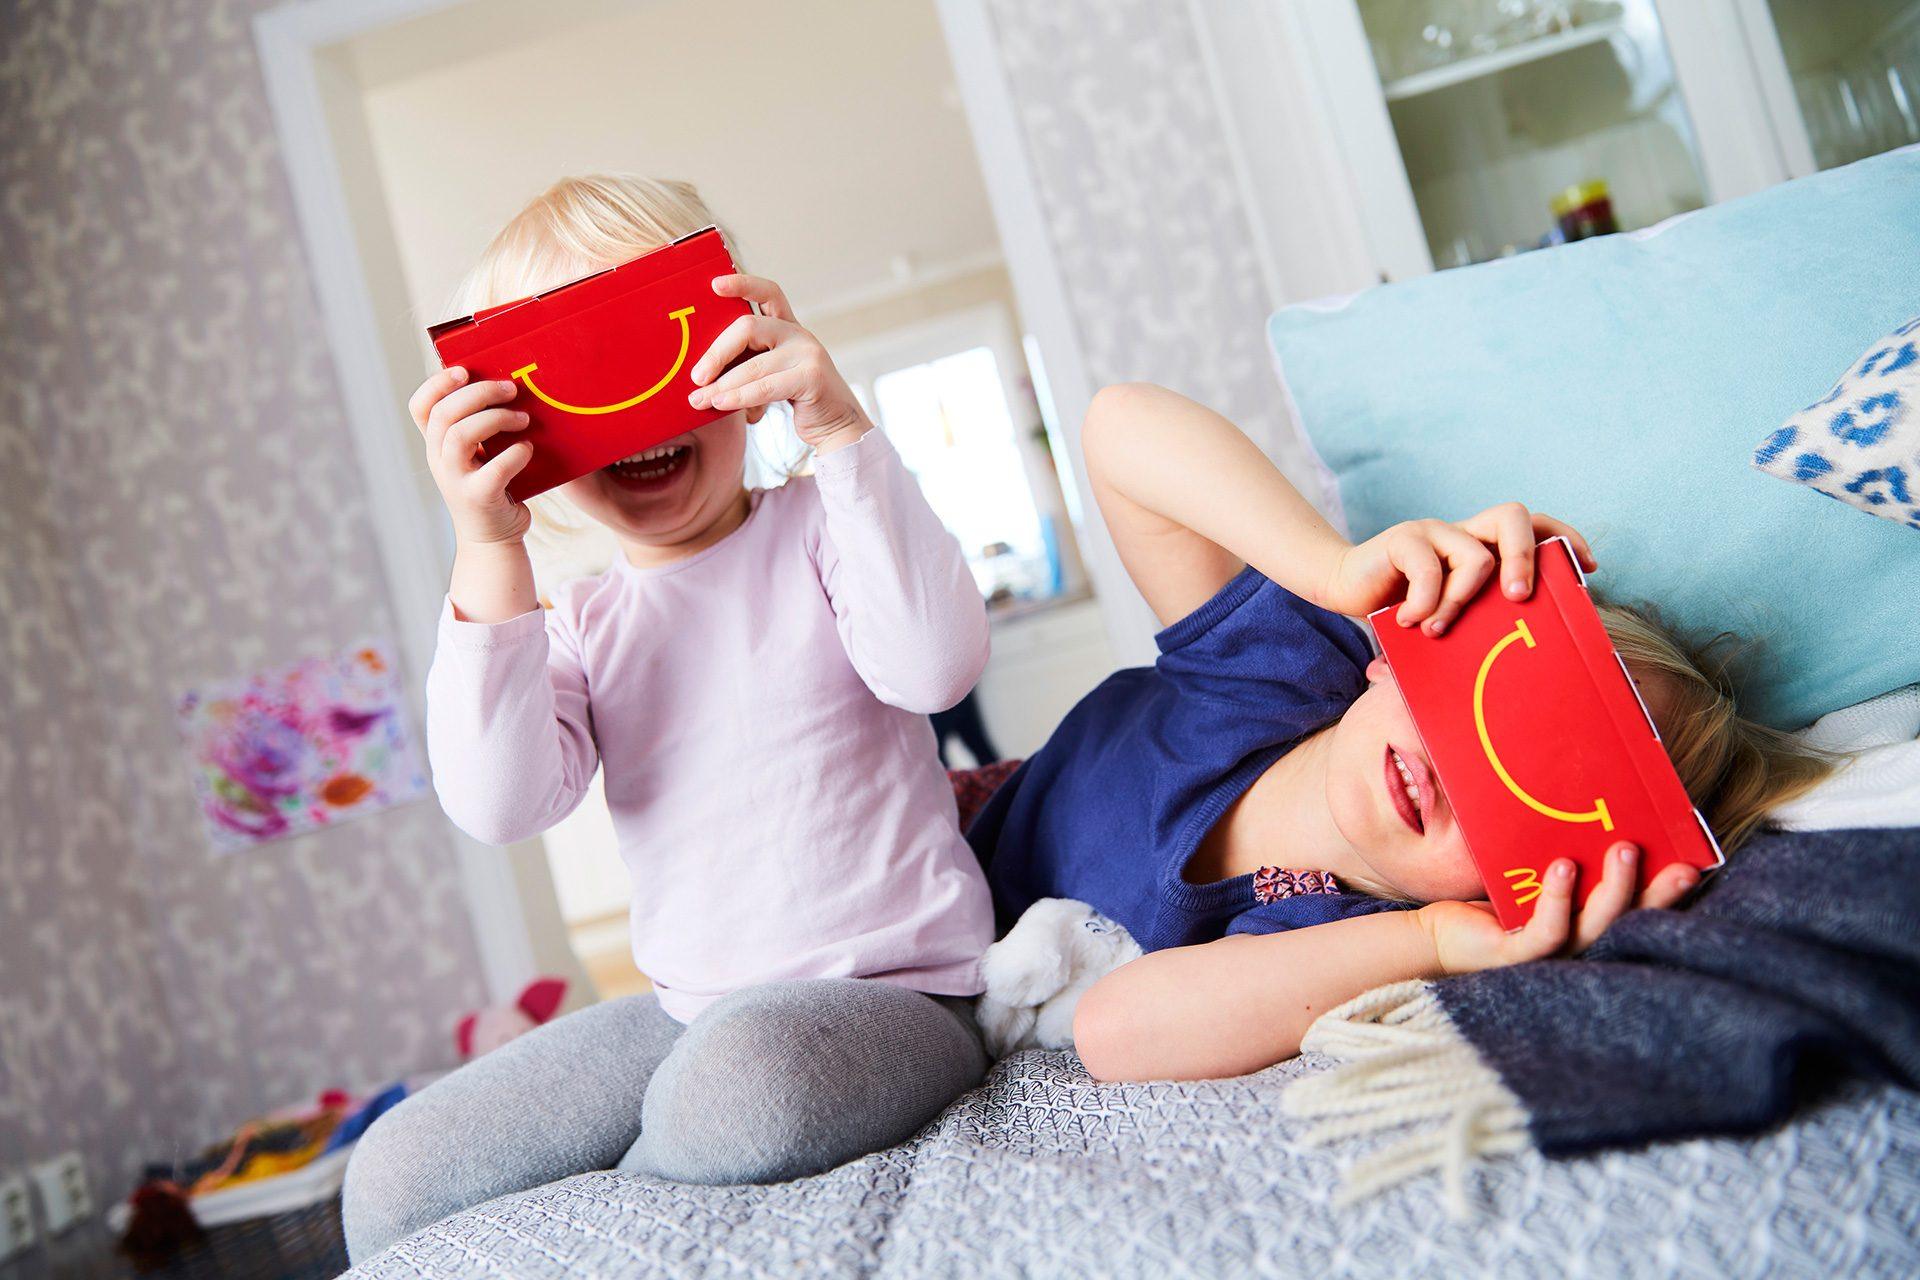 McDonald’s is Getting VR Happy Meals in Sweden